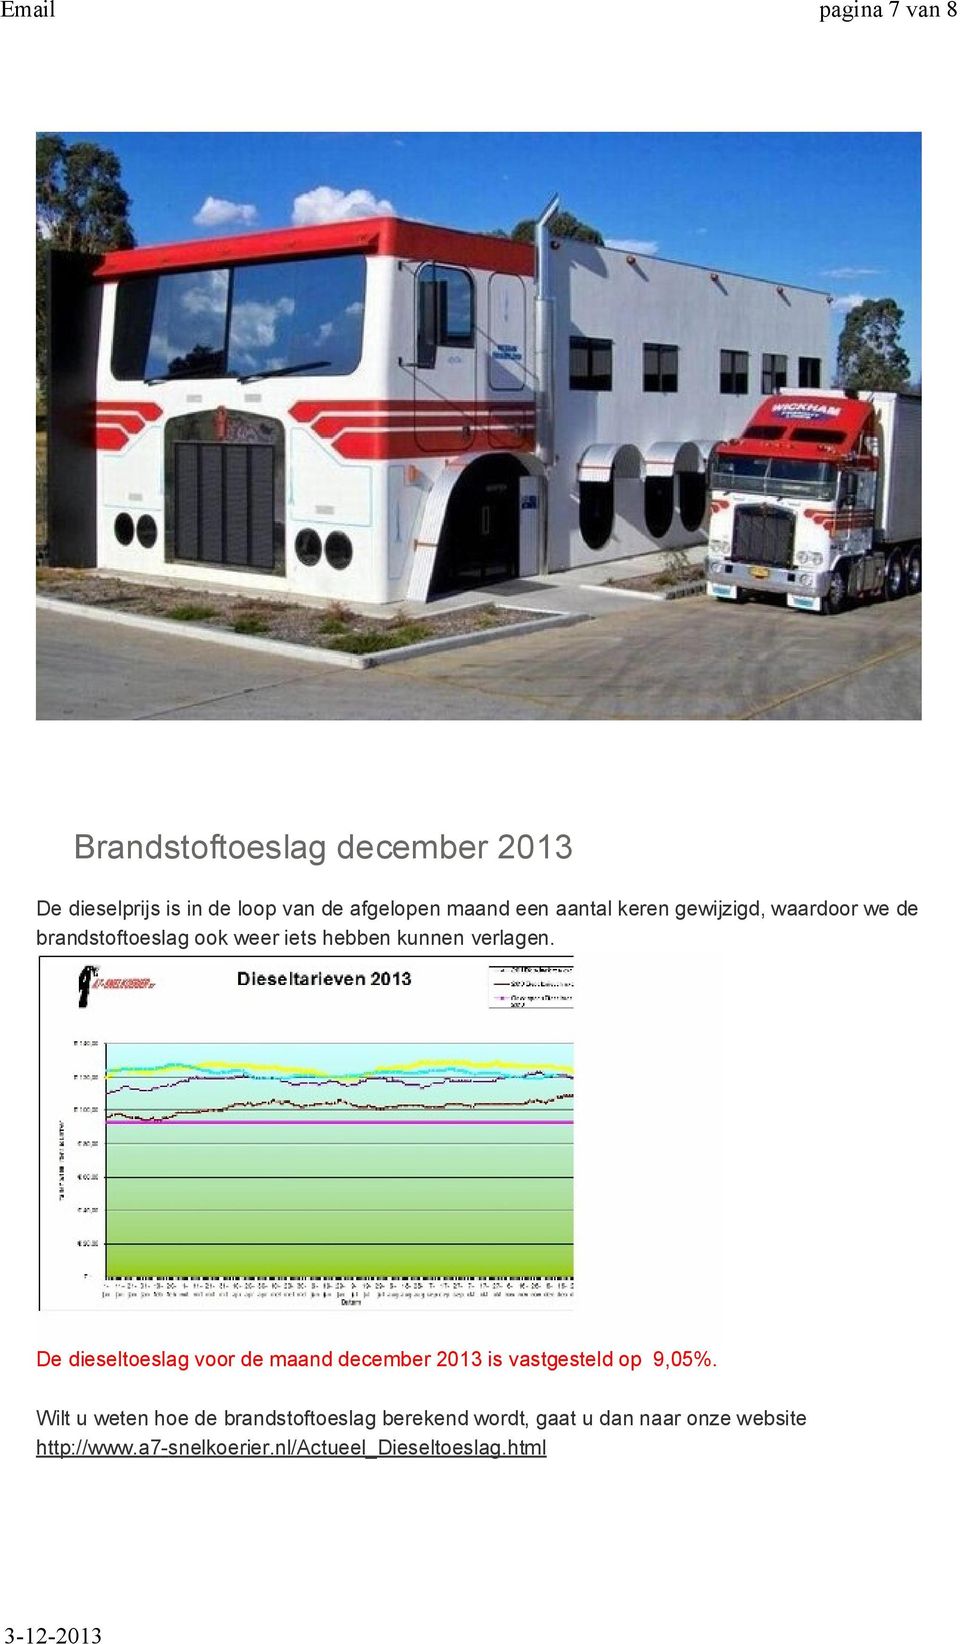 De dieseltoeslag voor de maand december 2013 is vastgesteld op 9,05%.